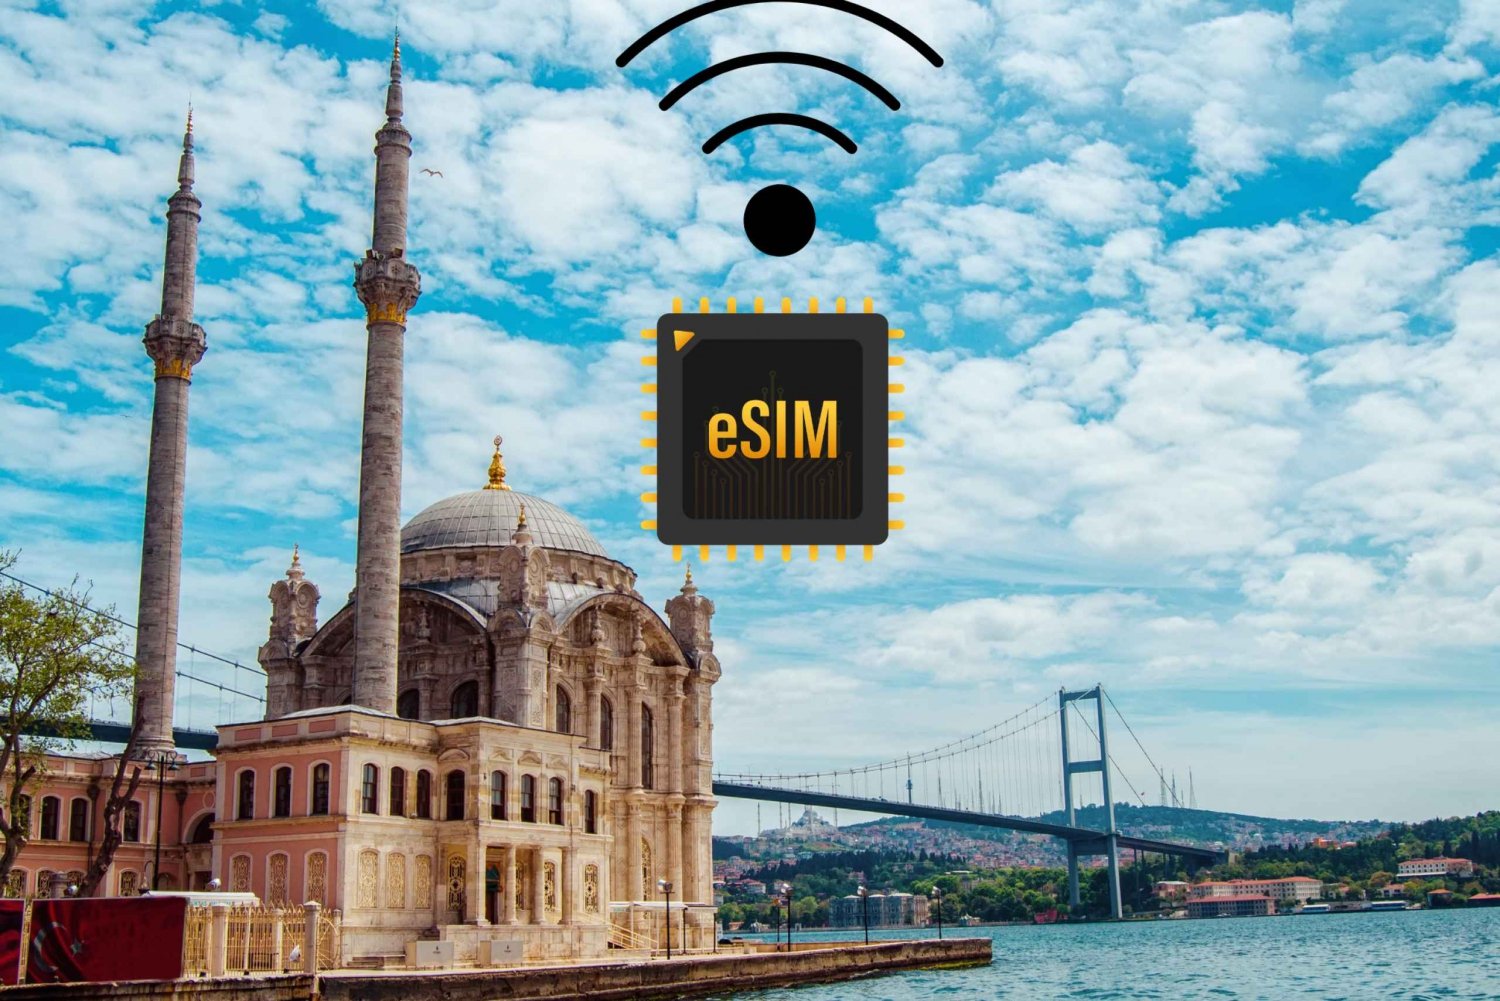 eSIM Turcja: Plan transmisji danych w szybkim Internecie 4G/5G